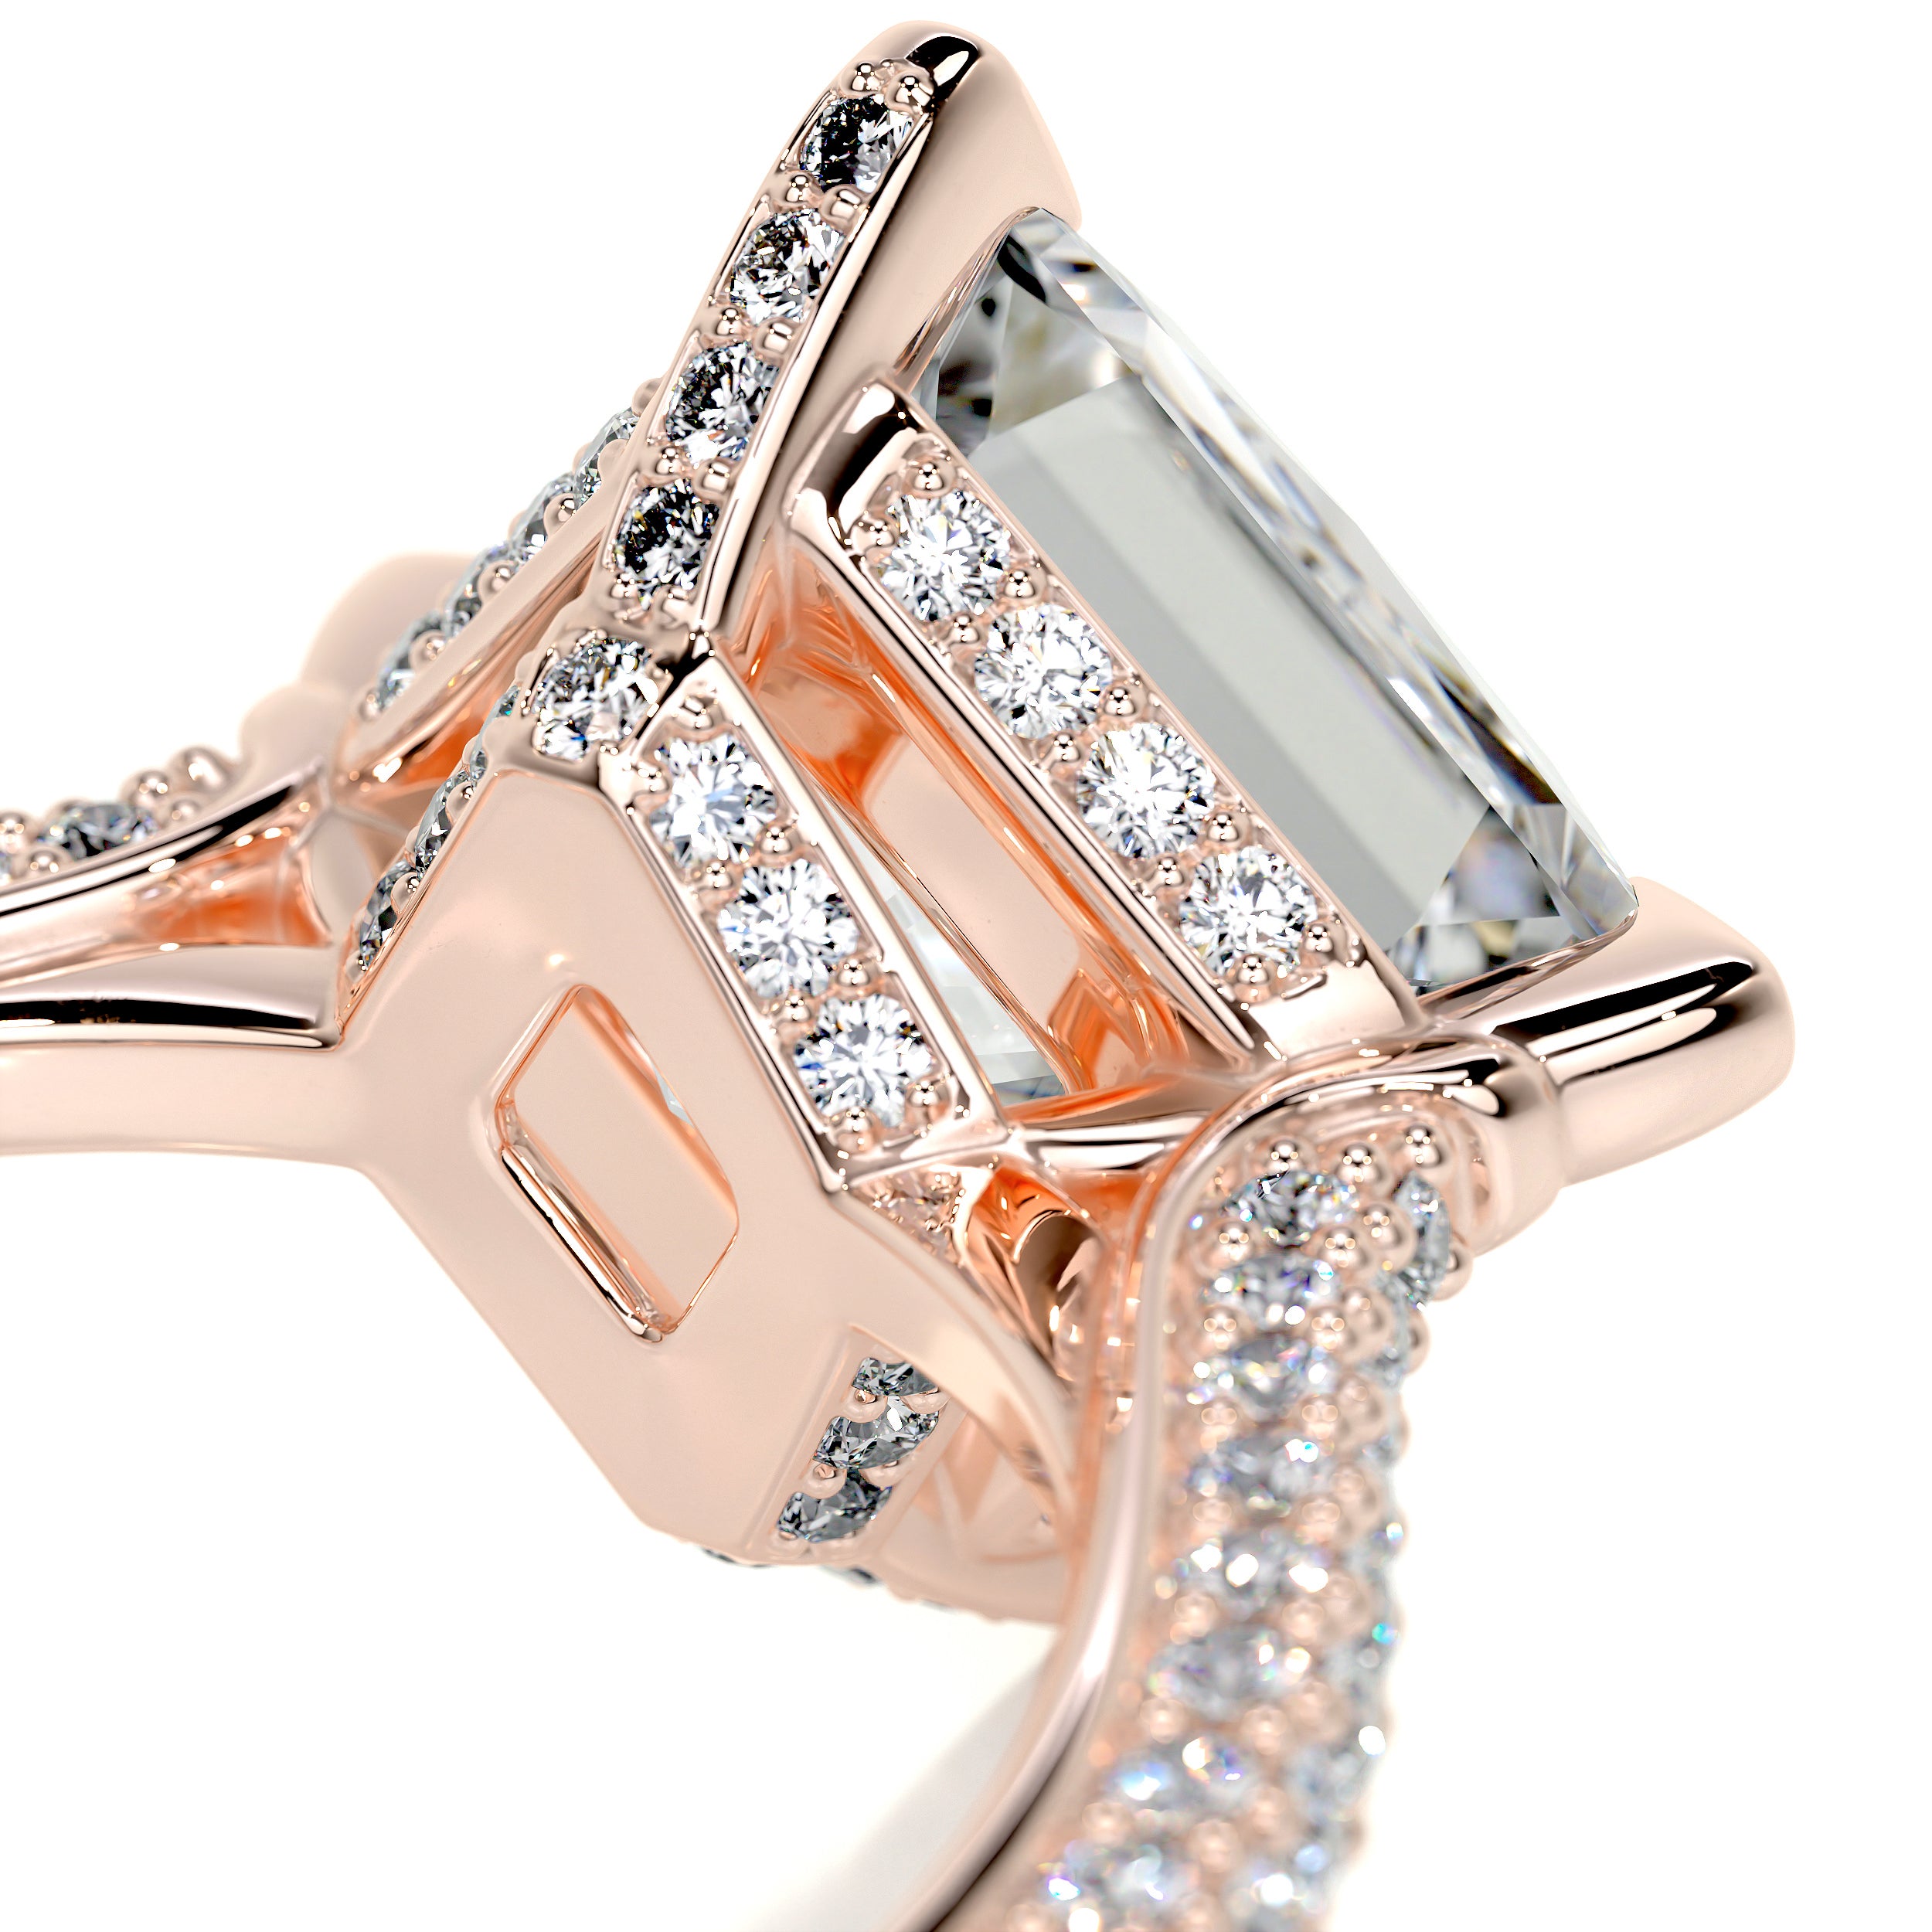 Jocelyn Diamond Engagement Ring -14K Rose Gold